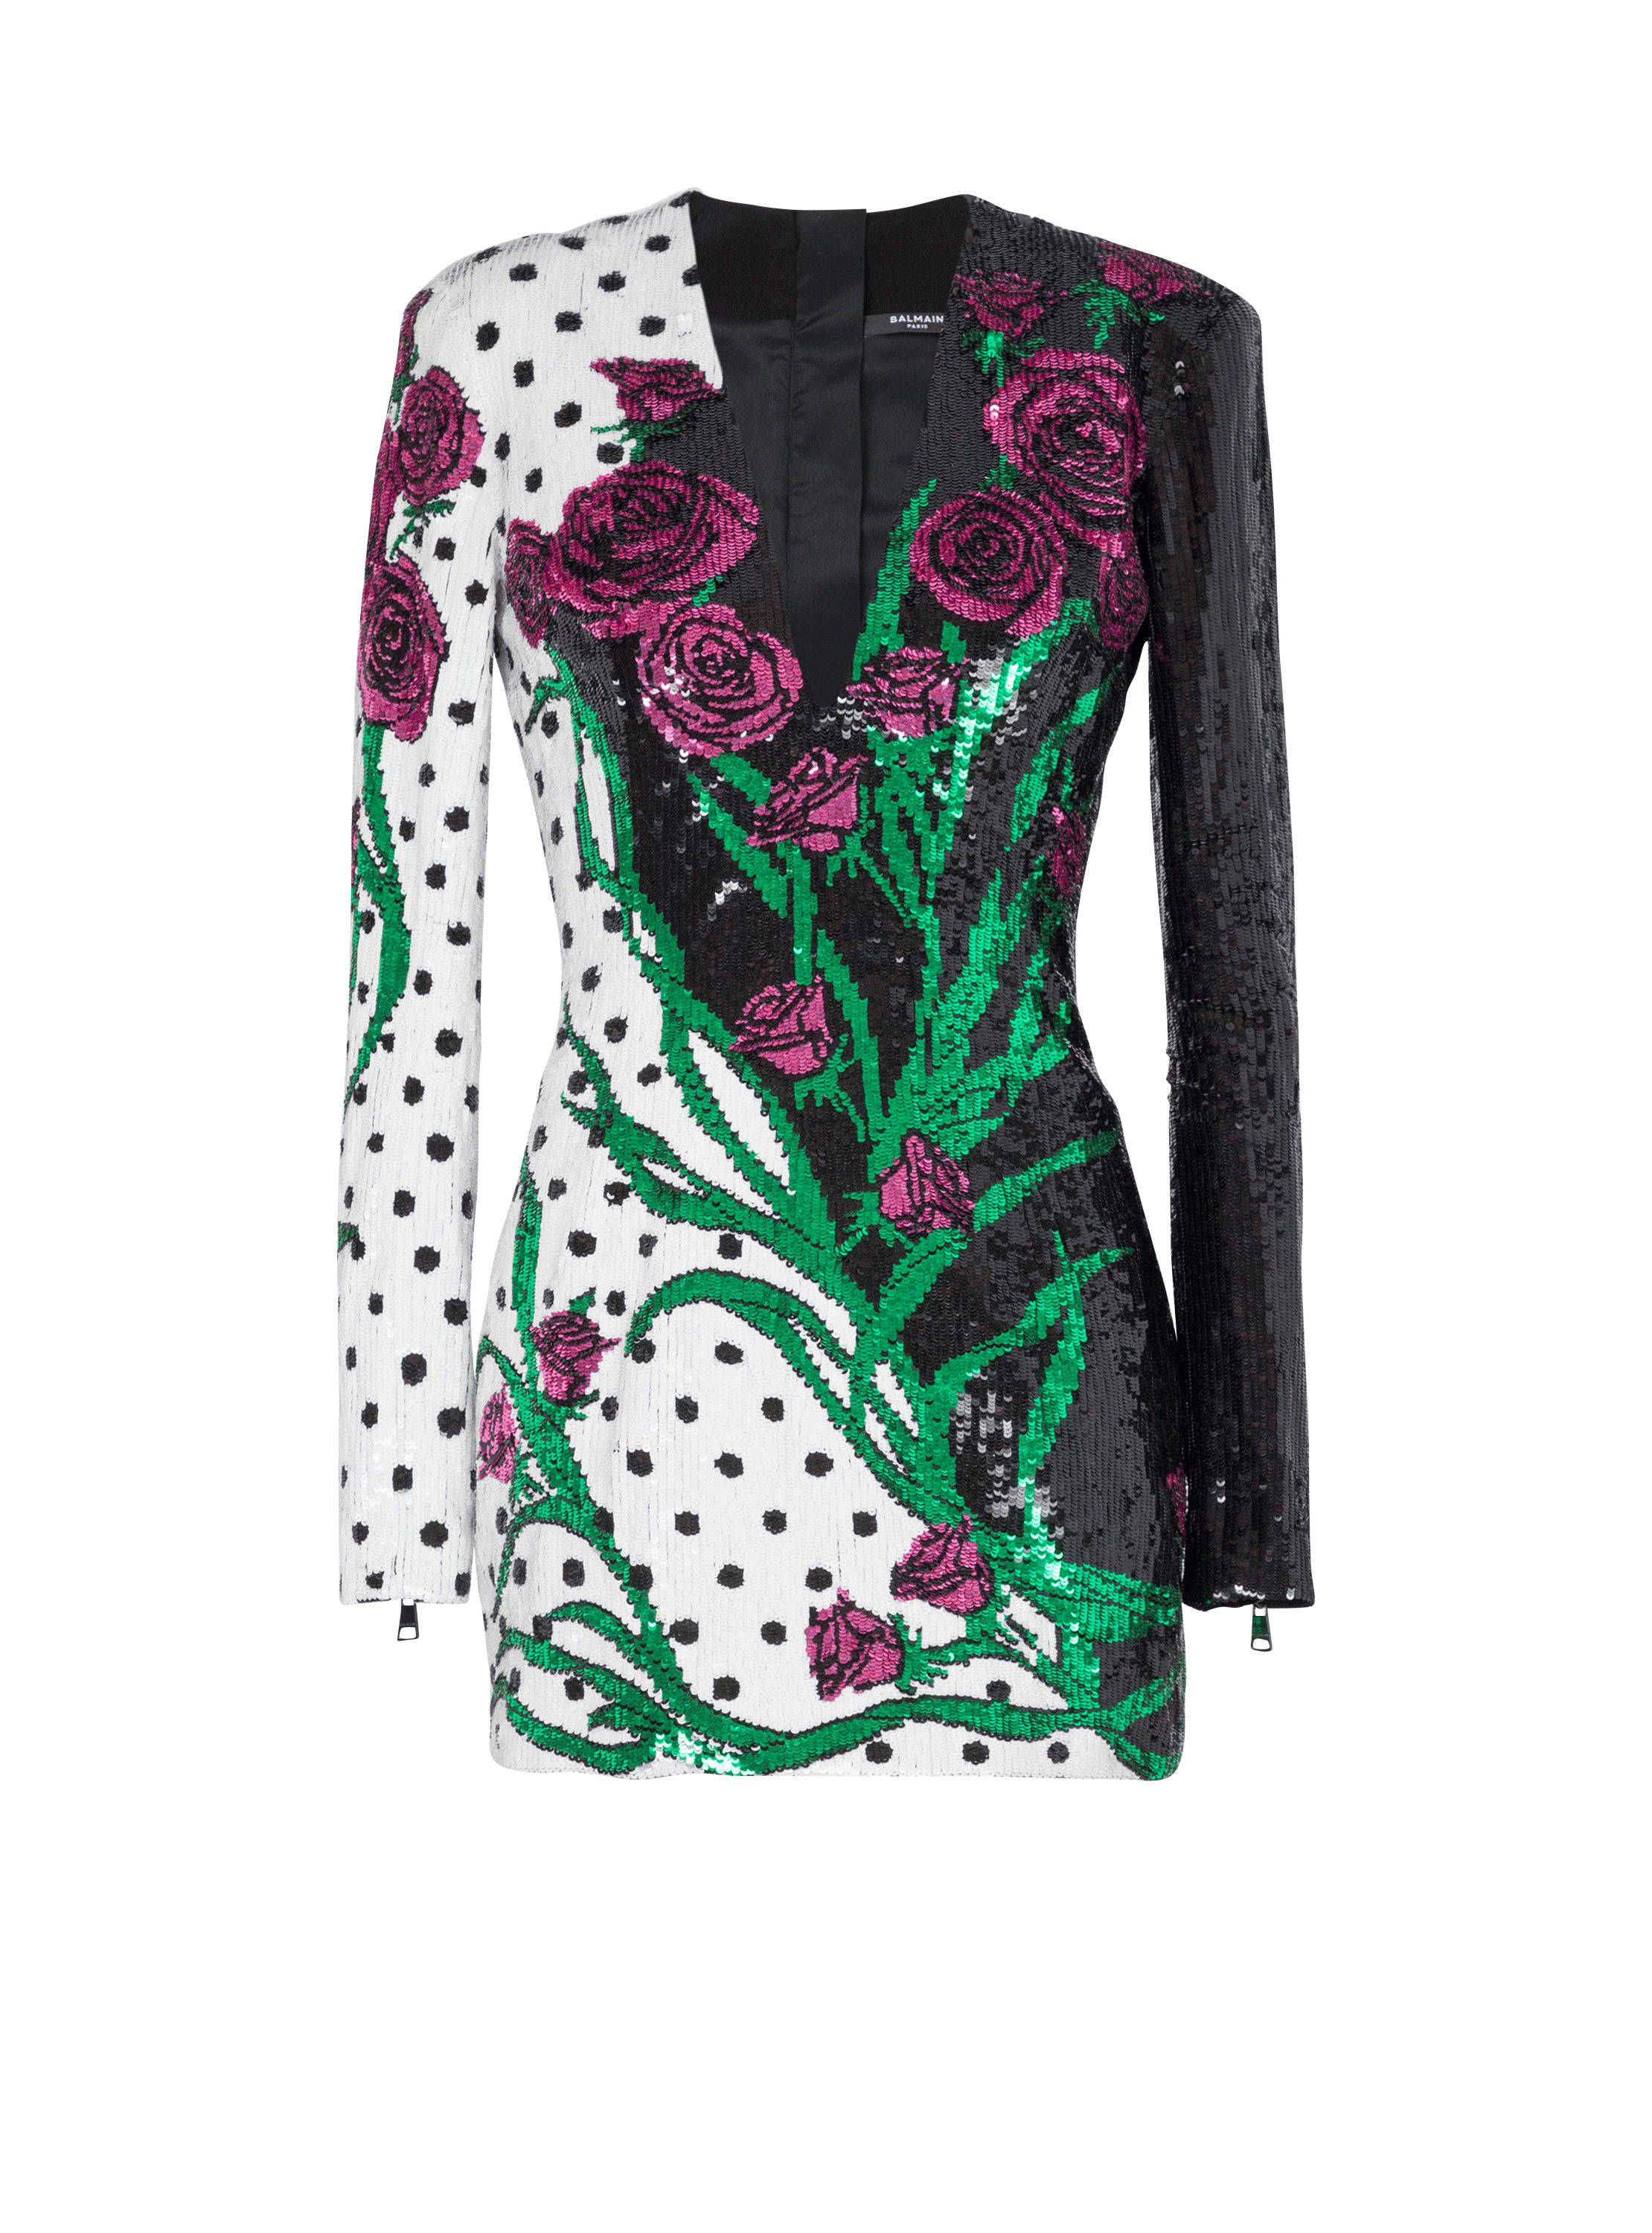 Kurzes Kleid mit Rosen- und Polka Dots-Print